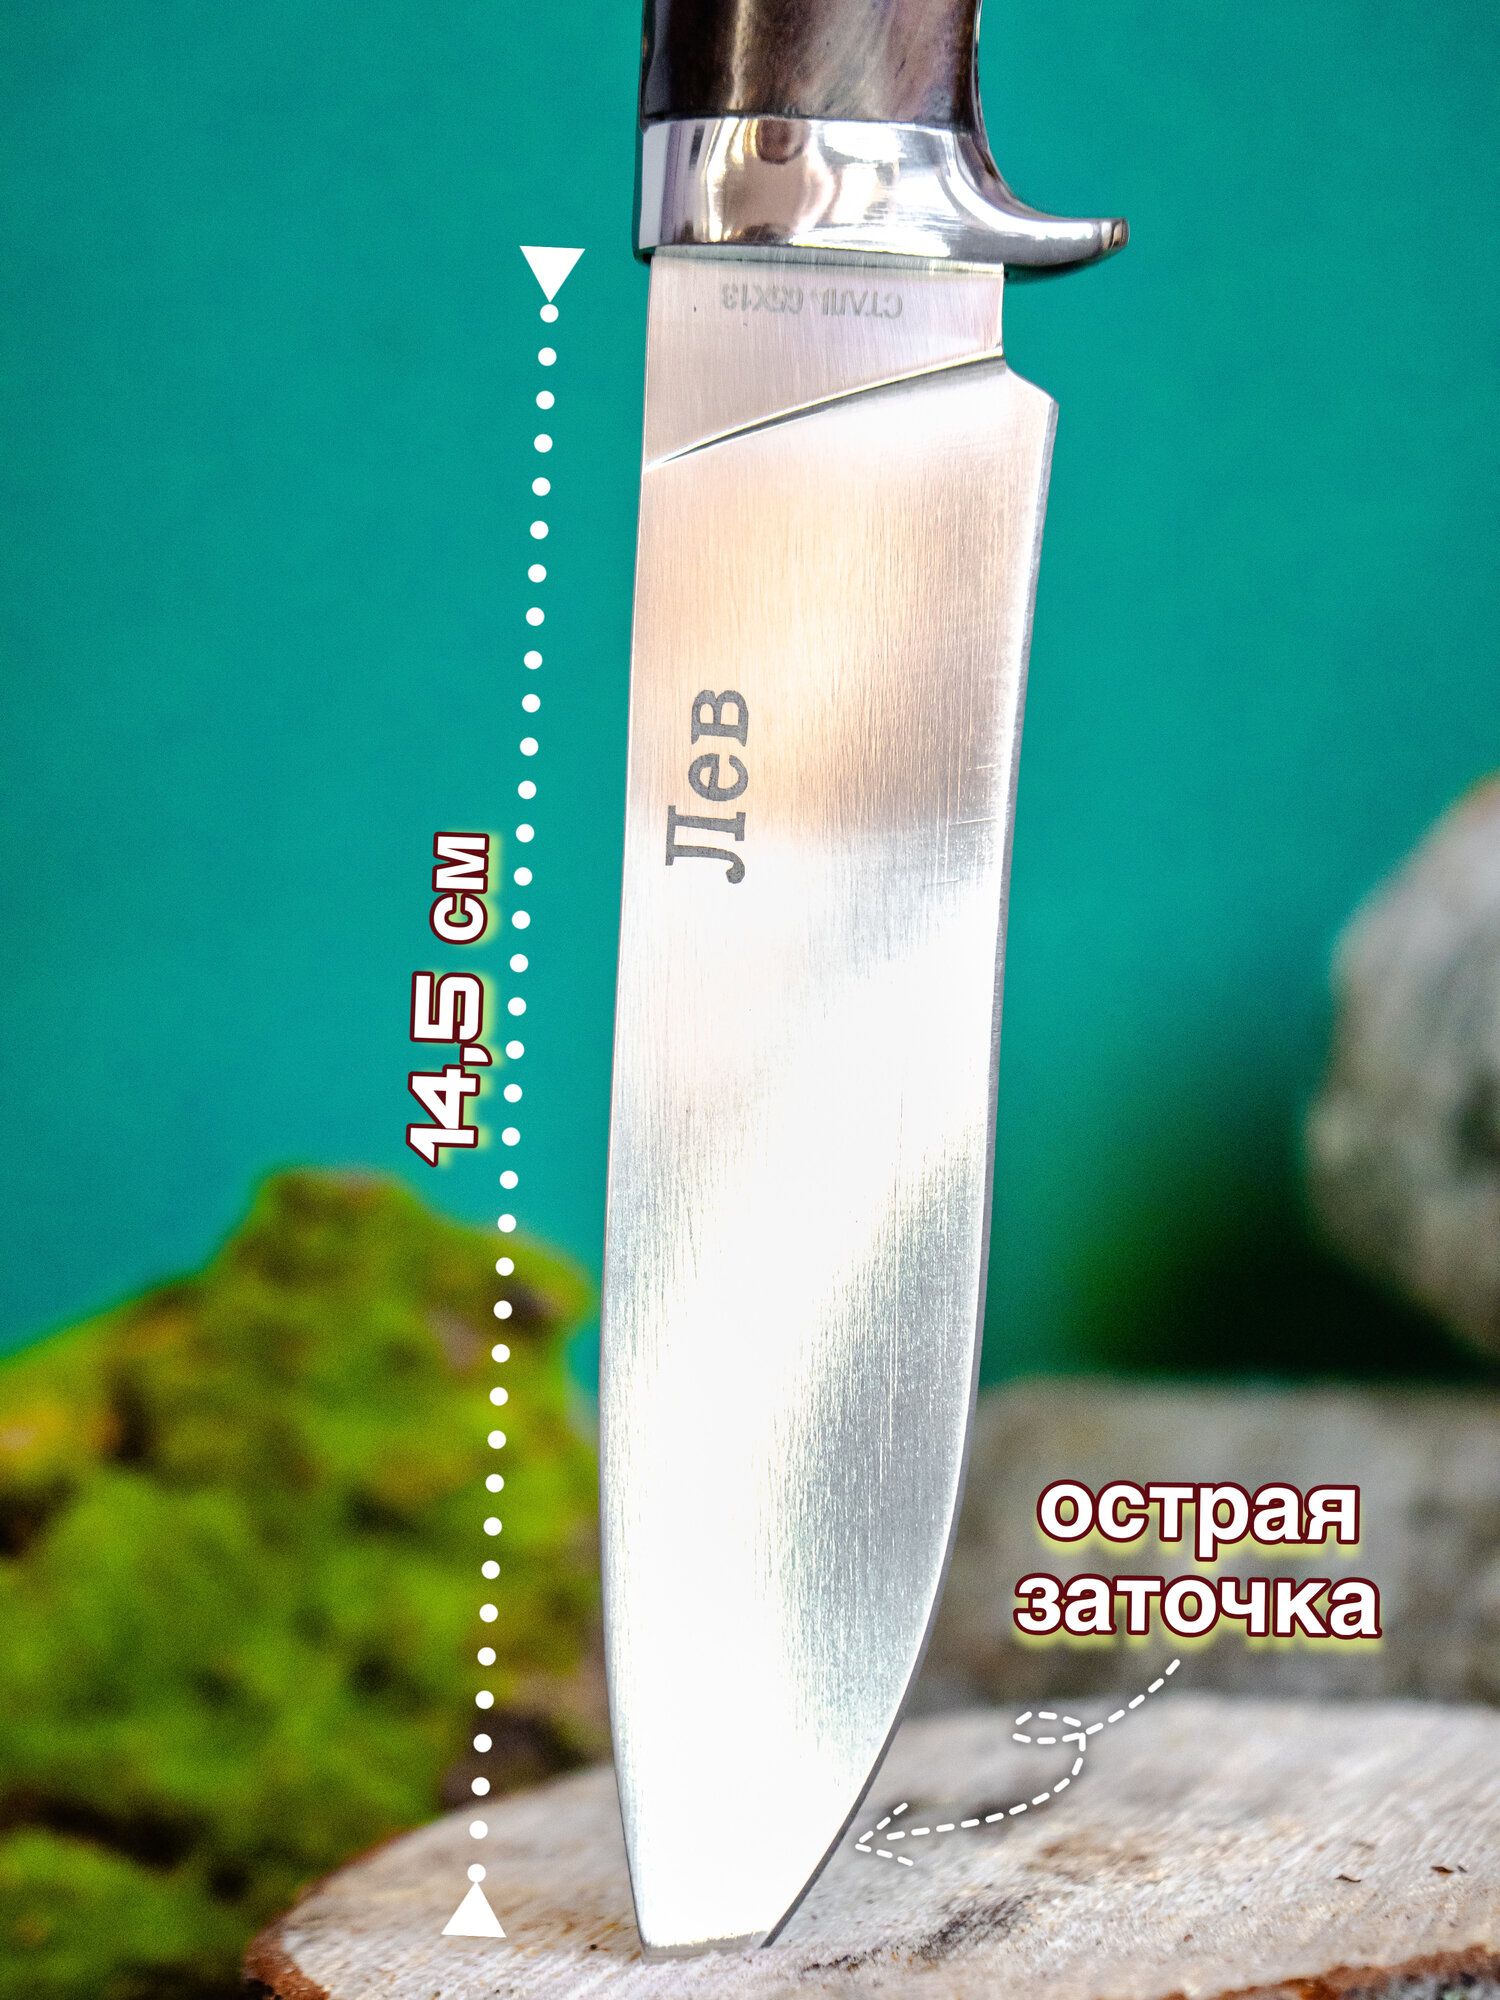 Нож туристический Большая пятёрка сталь 65х13 с чехлом ножнами на пояс